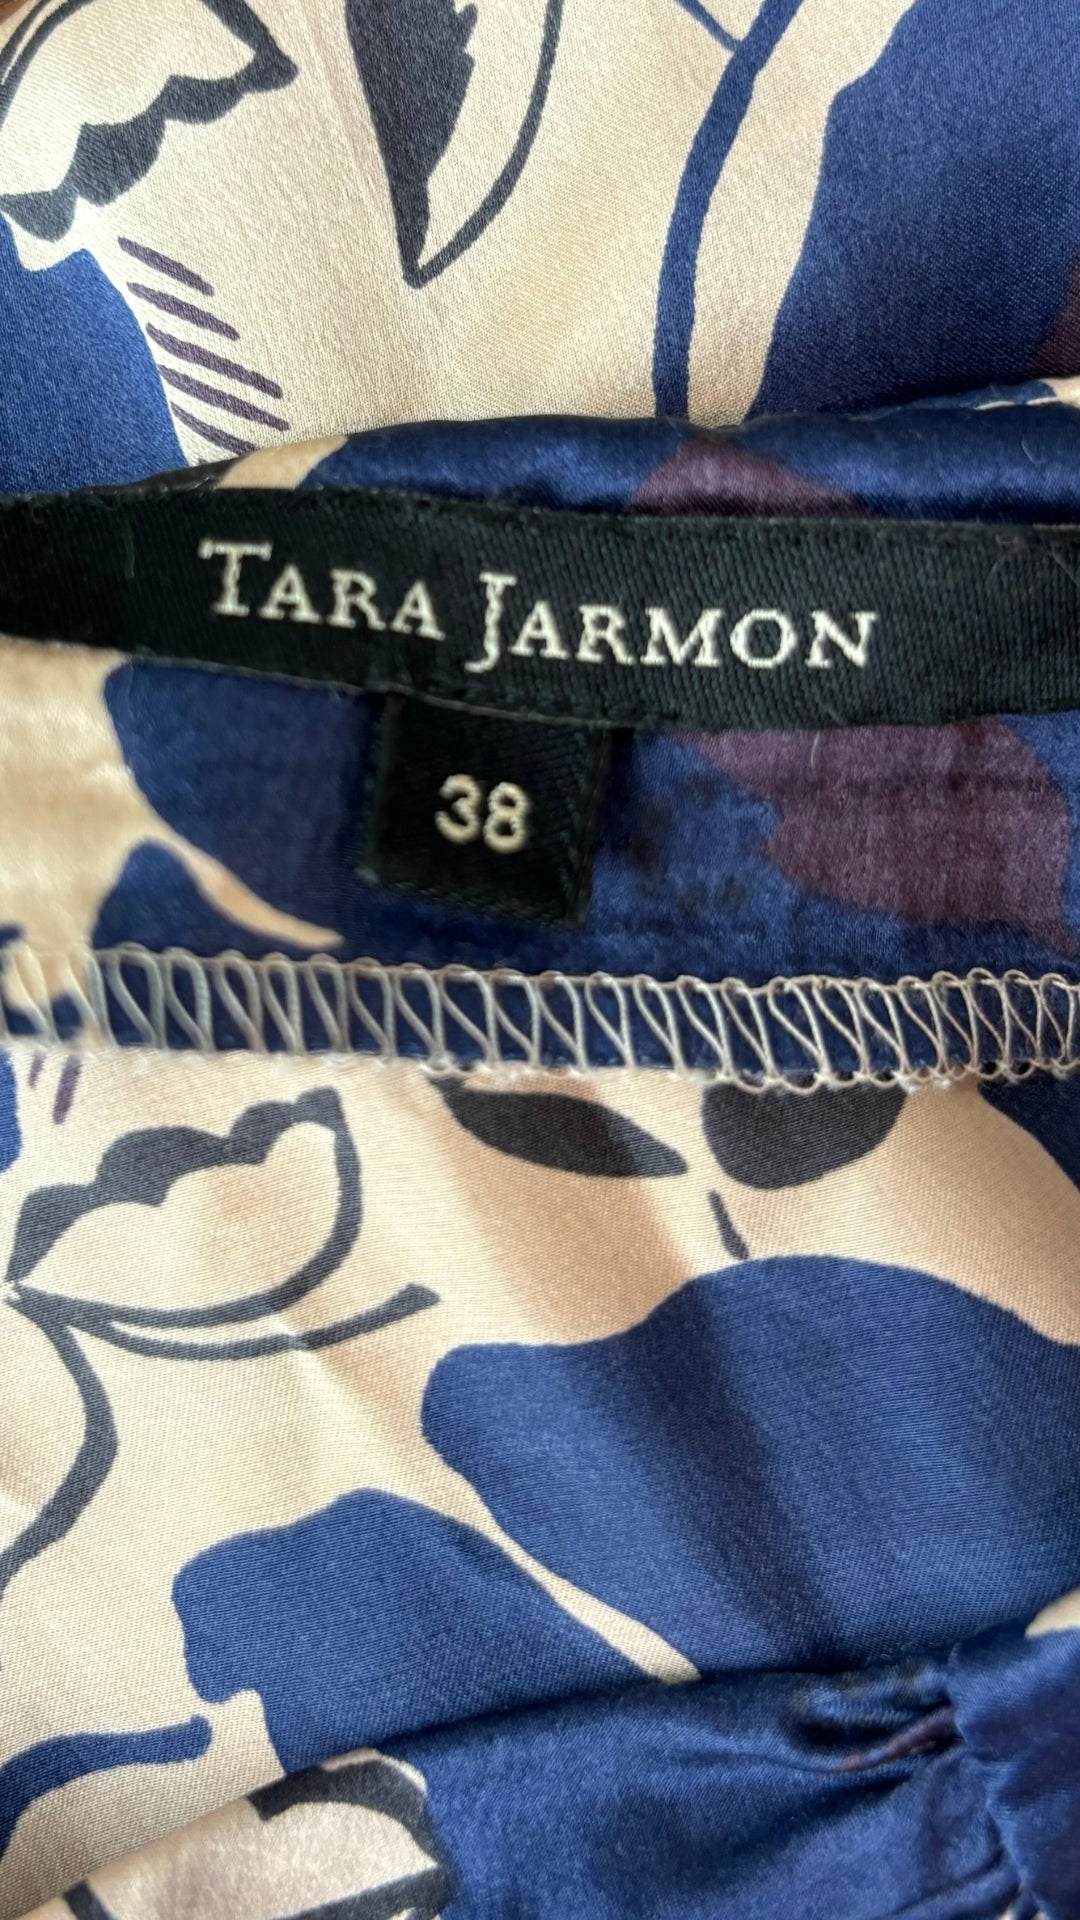 Jupe en soie Tara Jarmon, taille 38 (s). Vue de l'étiquette.